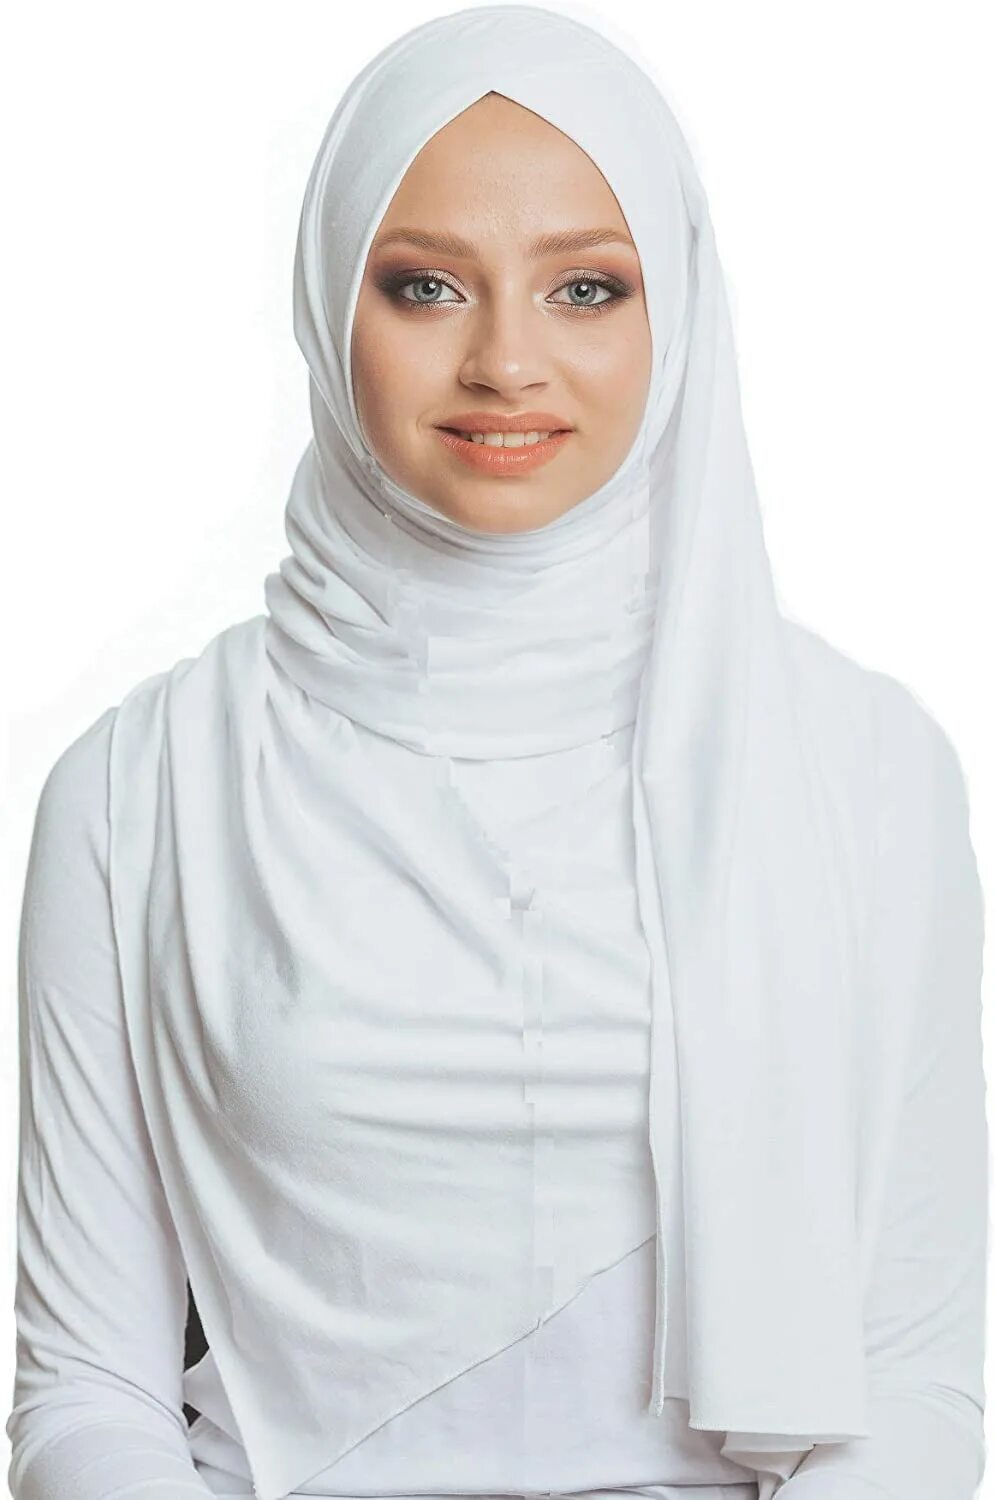 Сколько стоит мусульманский. Мусульманская одежда. Мусульманка в платке. Хиджаб одежда. Готовые платки для мусульманок.